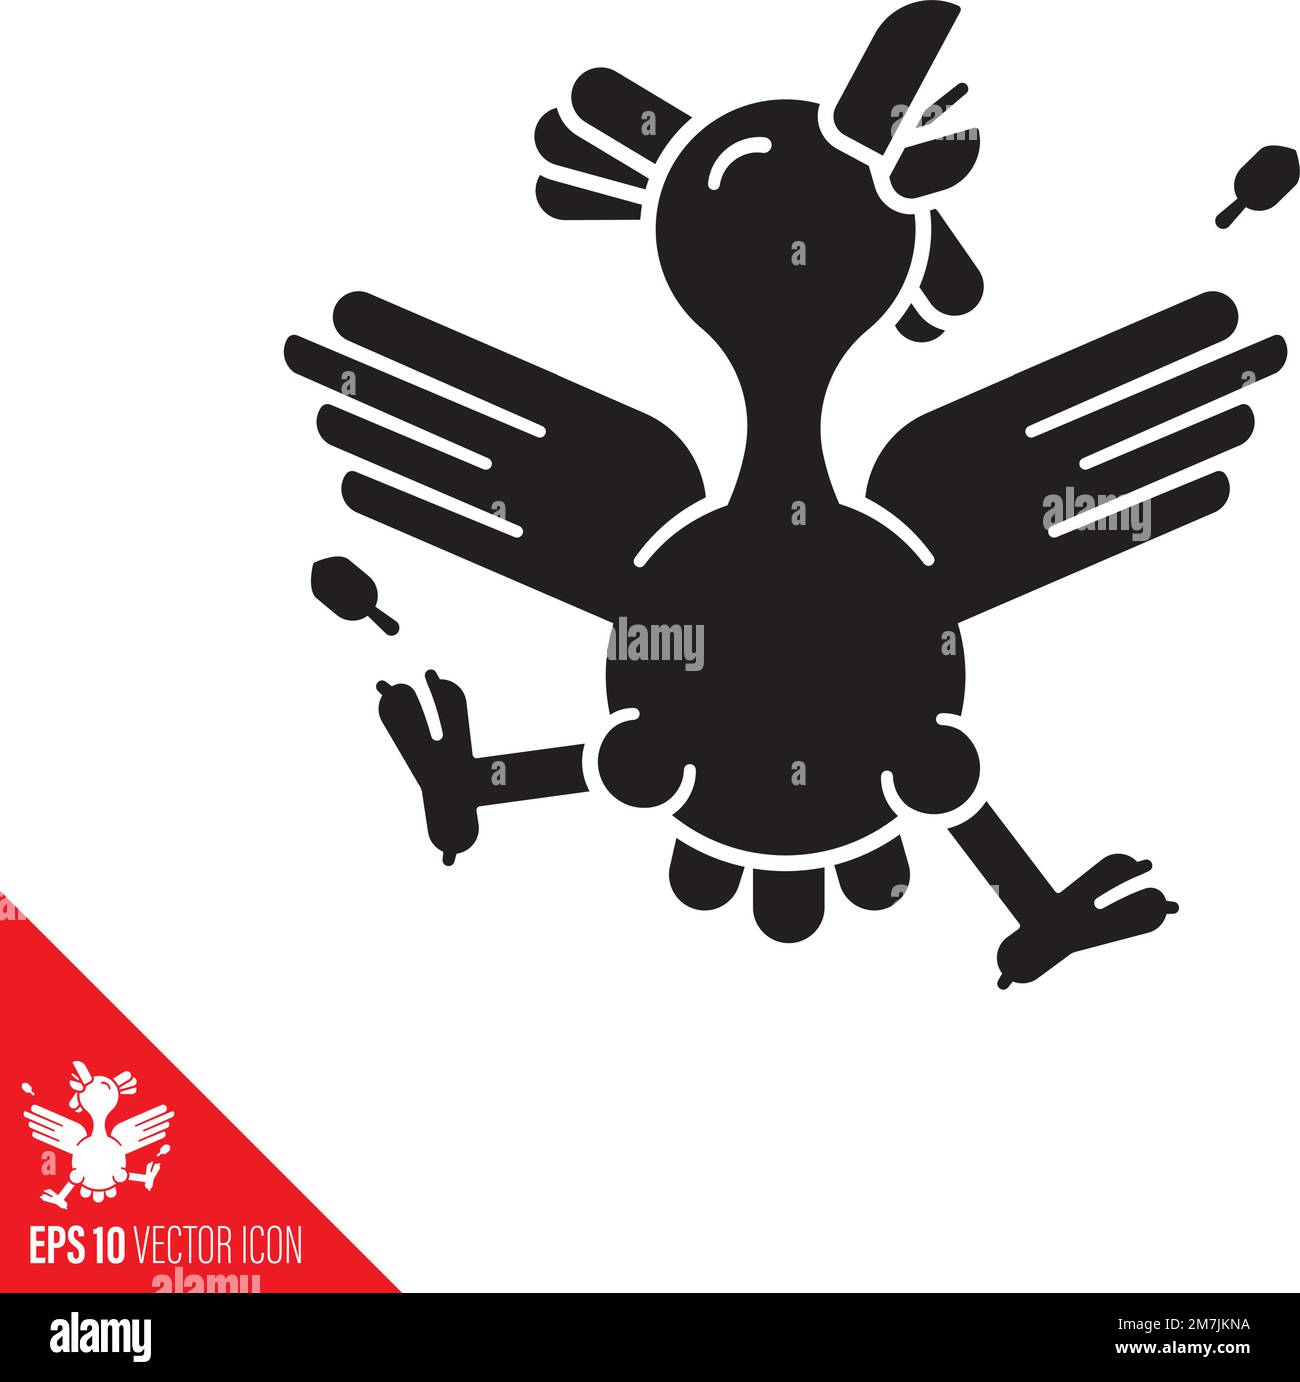 Dancing chicken vector glyph icon. Cheerful cartoon hen character symbol. Stock Vector